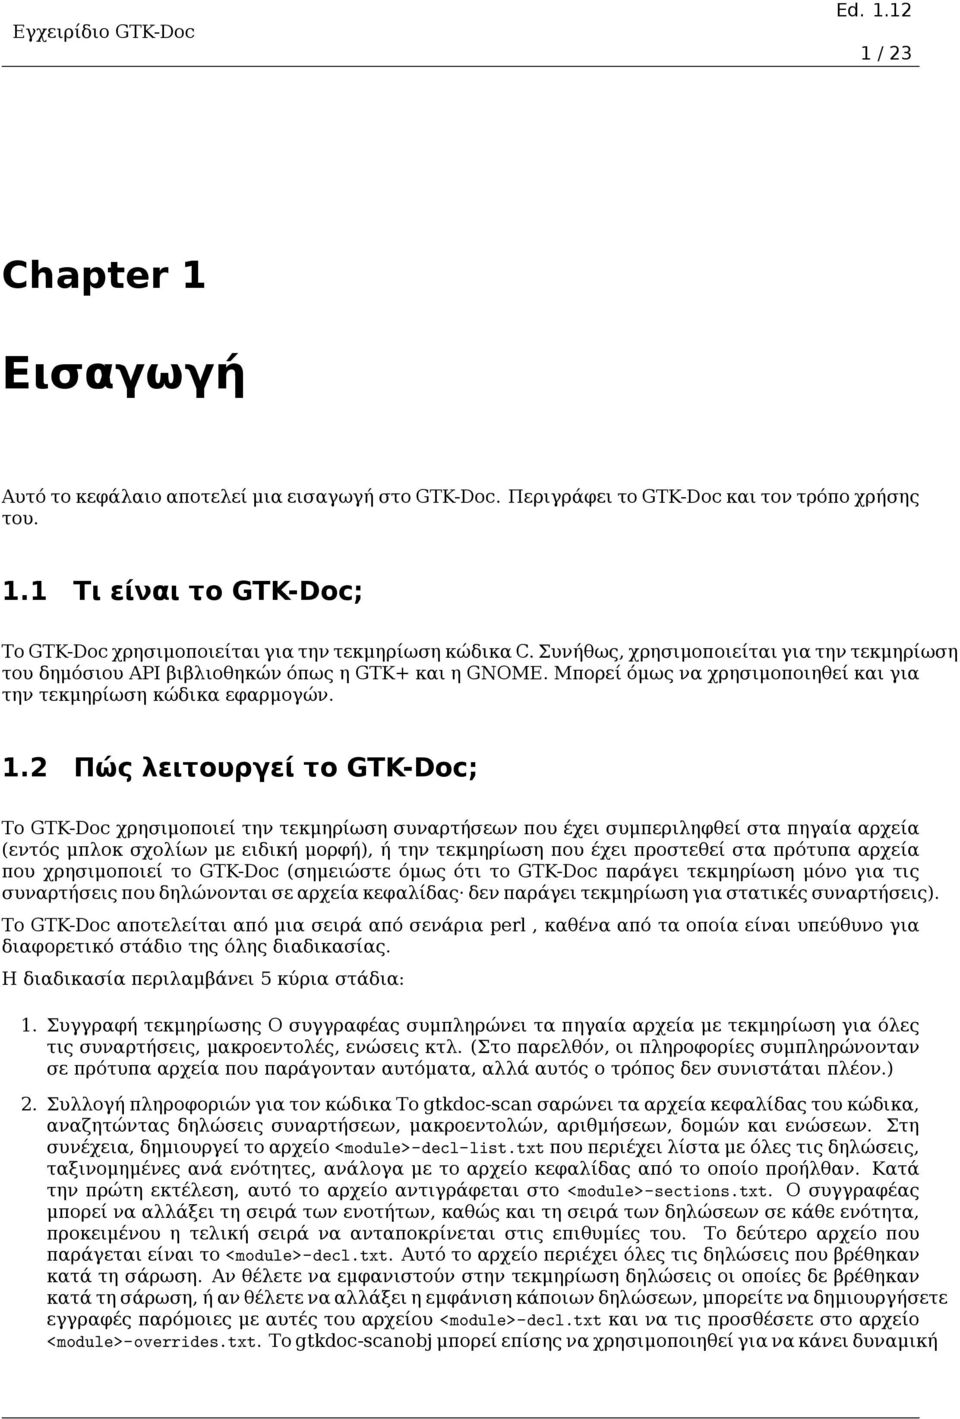 2 Πώς λειτουργεί το GTK-Doc; Το GTK-Doc χρησιμοποιεί την τεκμηρίωση συναρτήσεων που έχει συμπεριληφθεί στα πηγαία αρχεία (εντός μπλοκ σχολίων με ειδική μορφή), ή την τεκμηρίωση που έχει προστεθεί στα